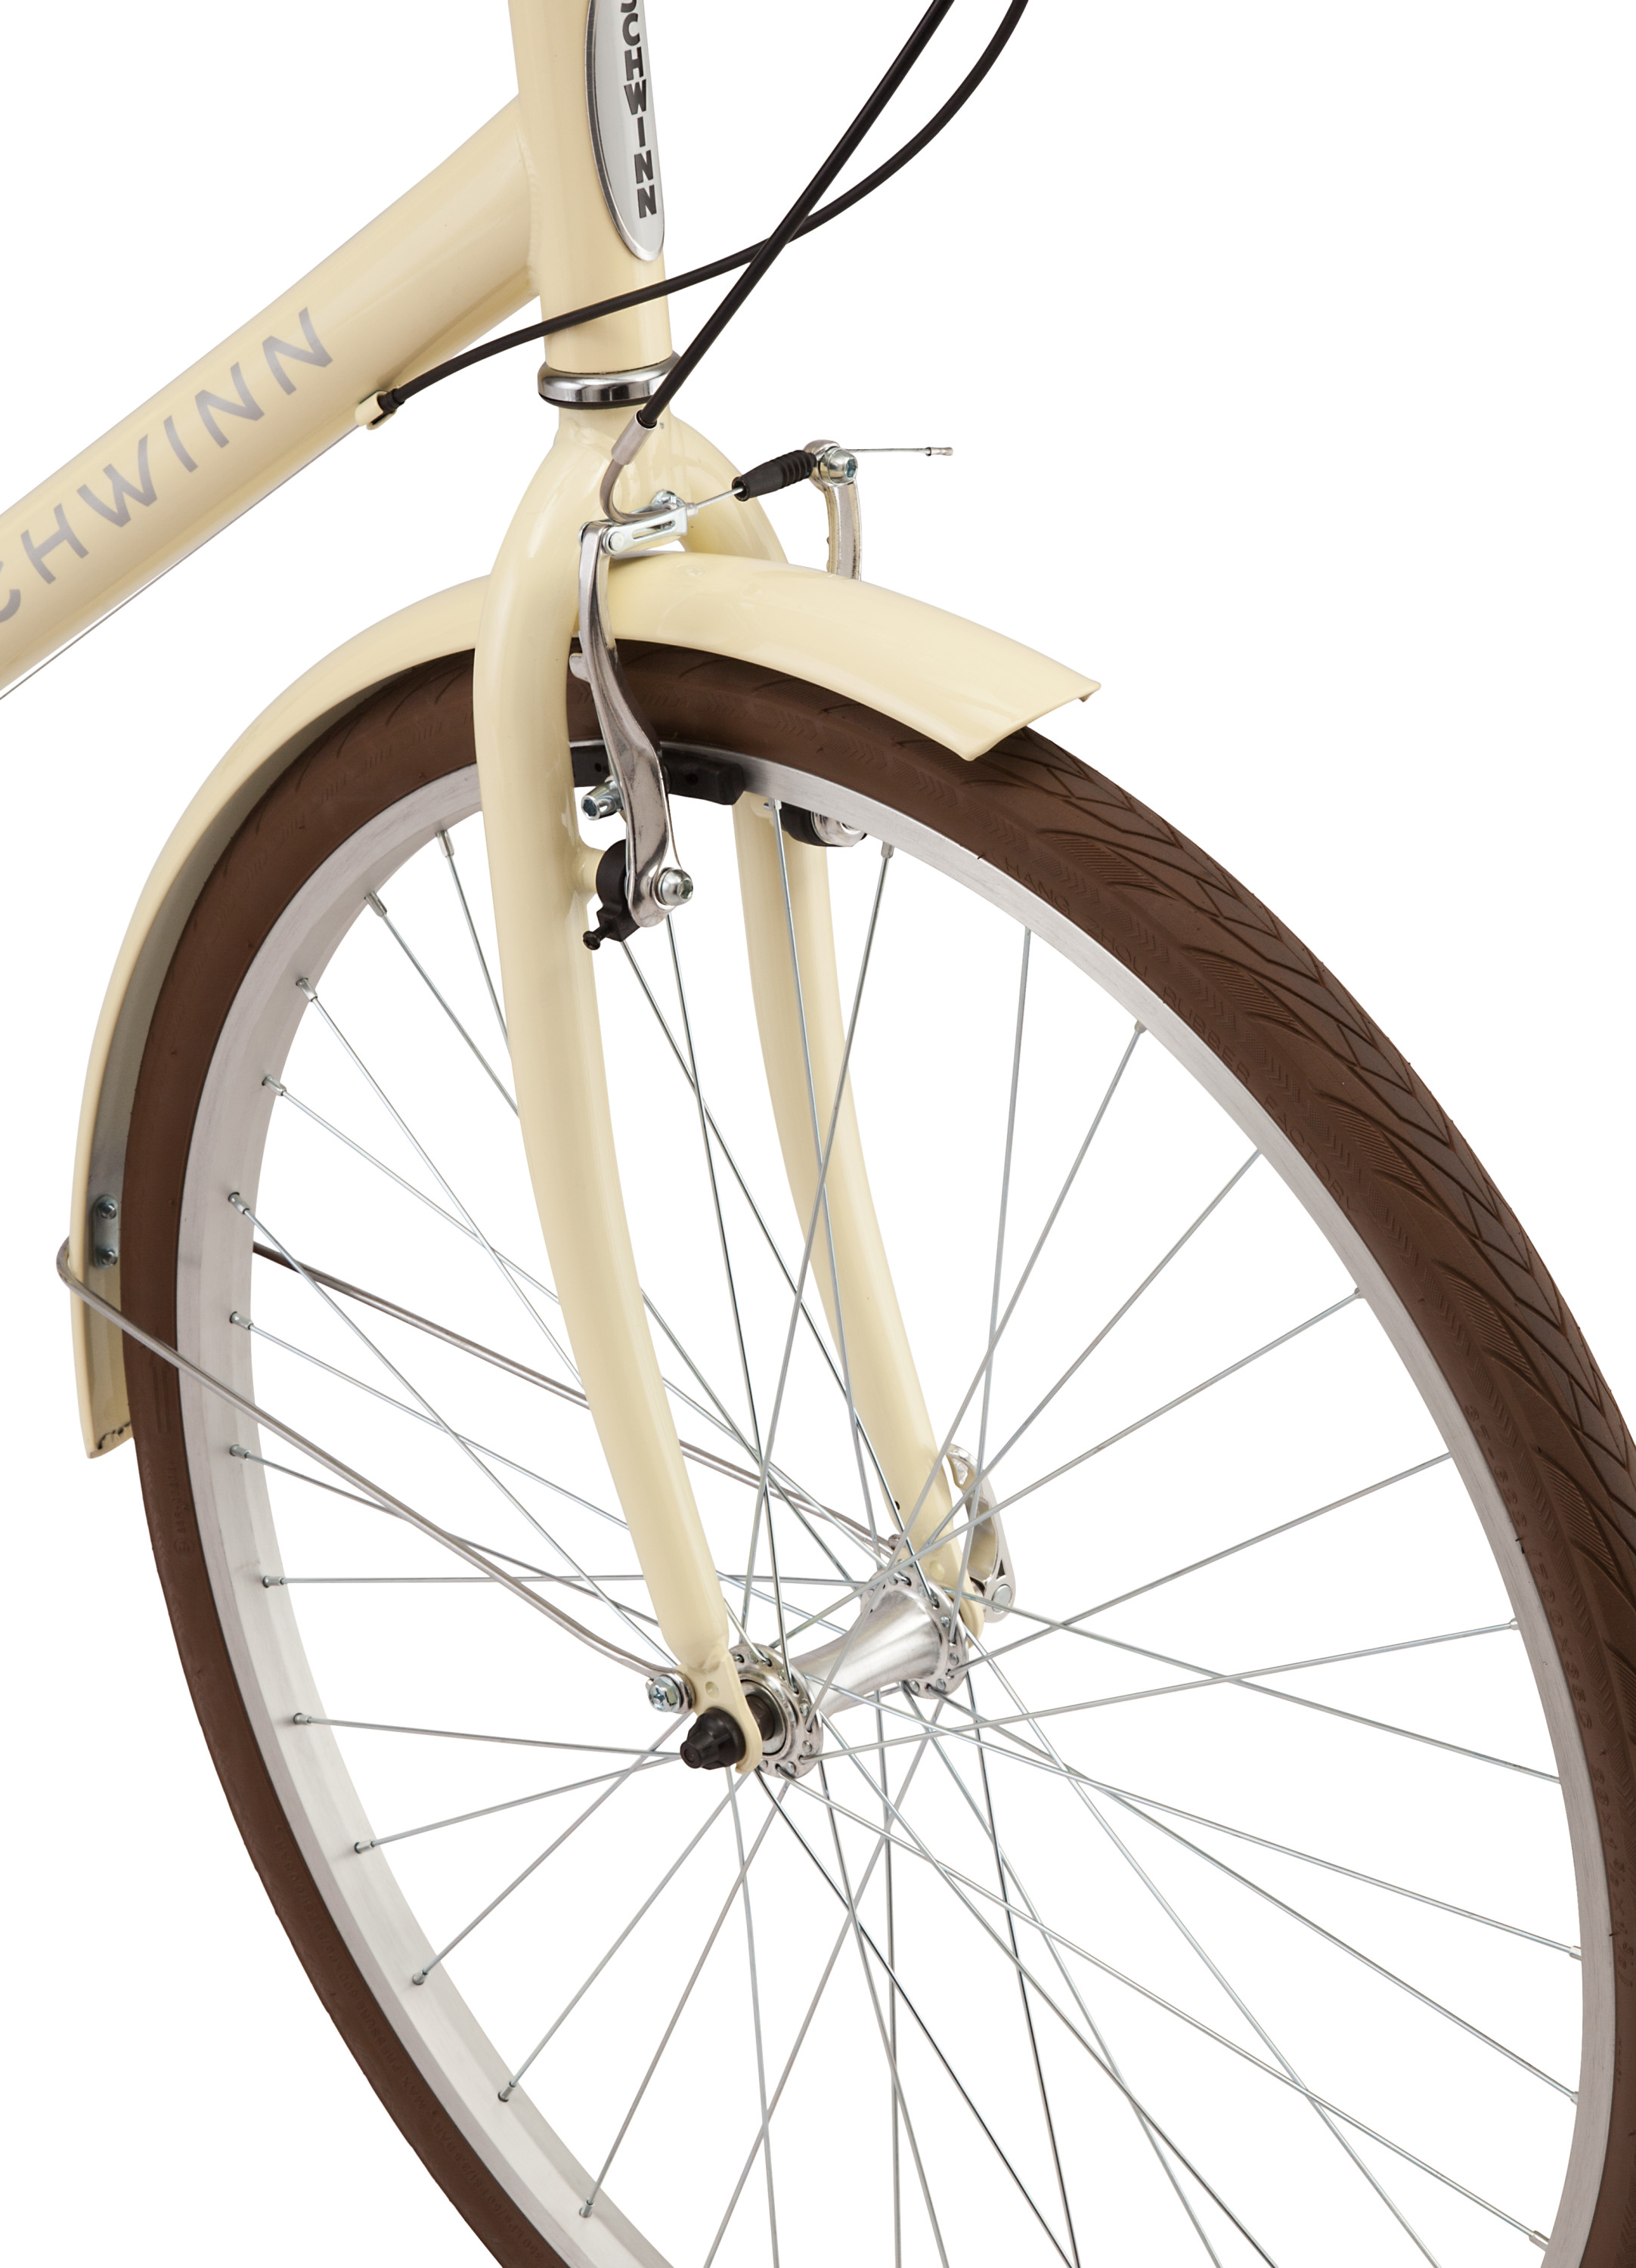 Schwinn Admiral 700c Adult Hybrid Bike, 7 Speed Unisex Bike, Cream - image 5 of 10